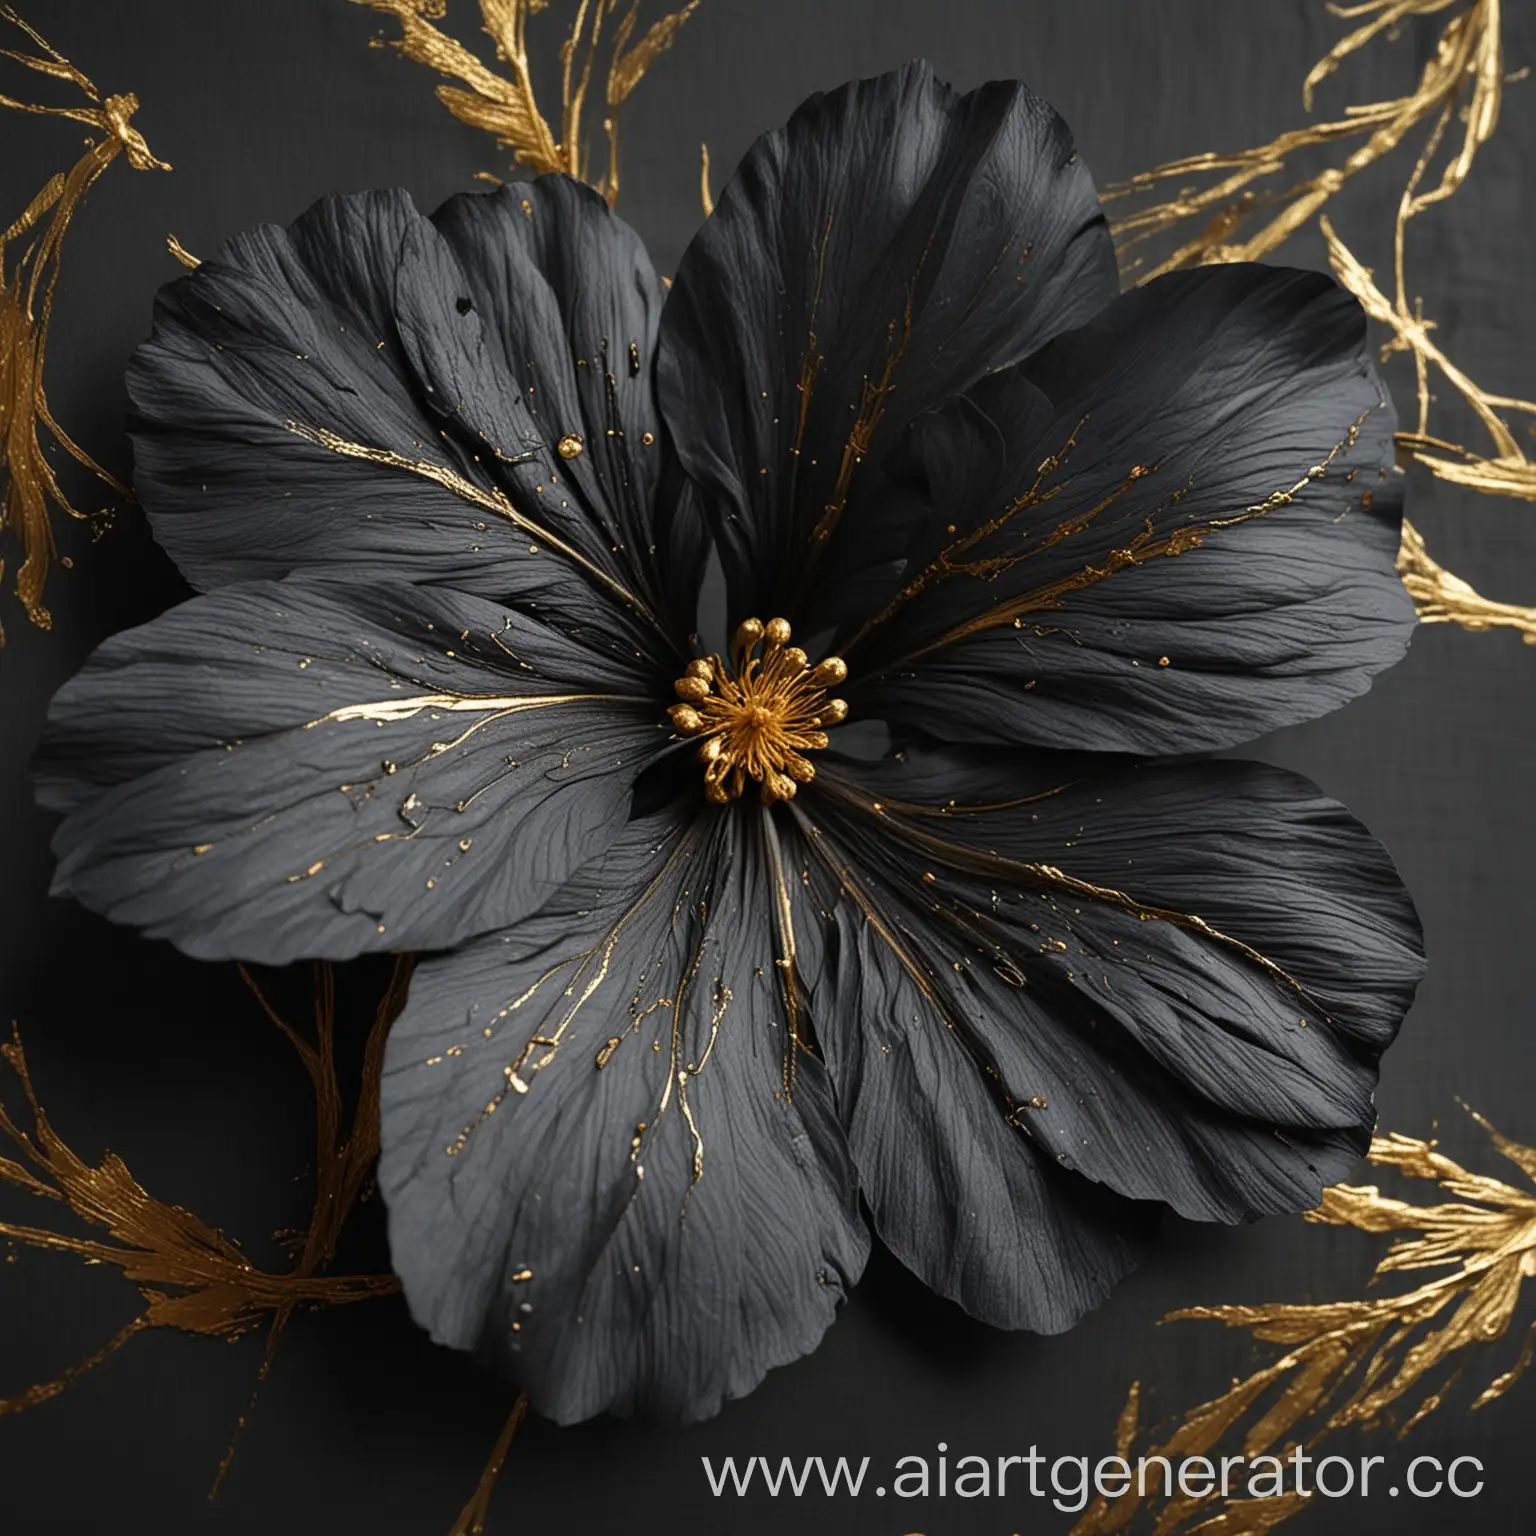 Лепестки цветка черно серого оттенка, золотые штрихи на жилках лепестков, выглядит благородно и дорого 